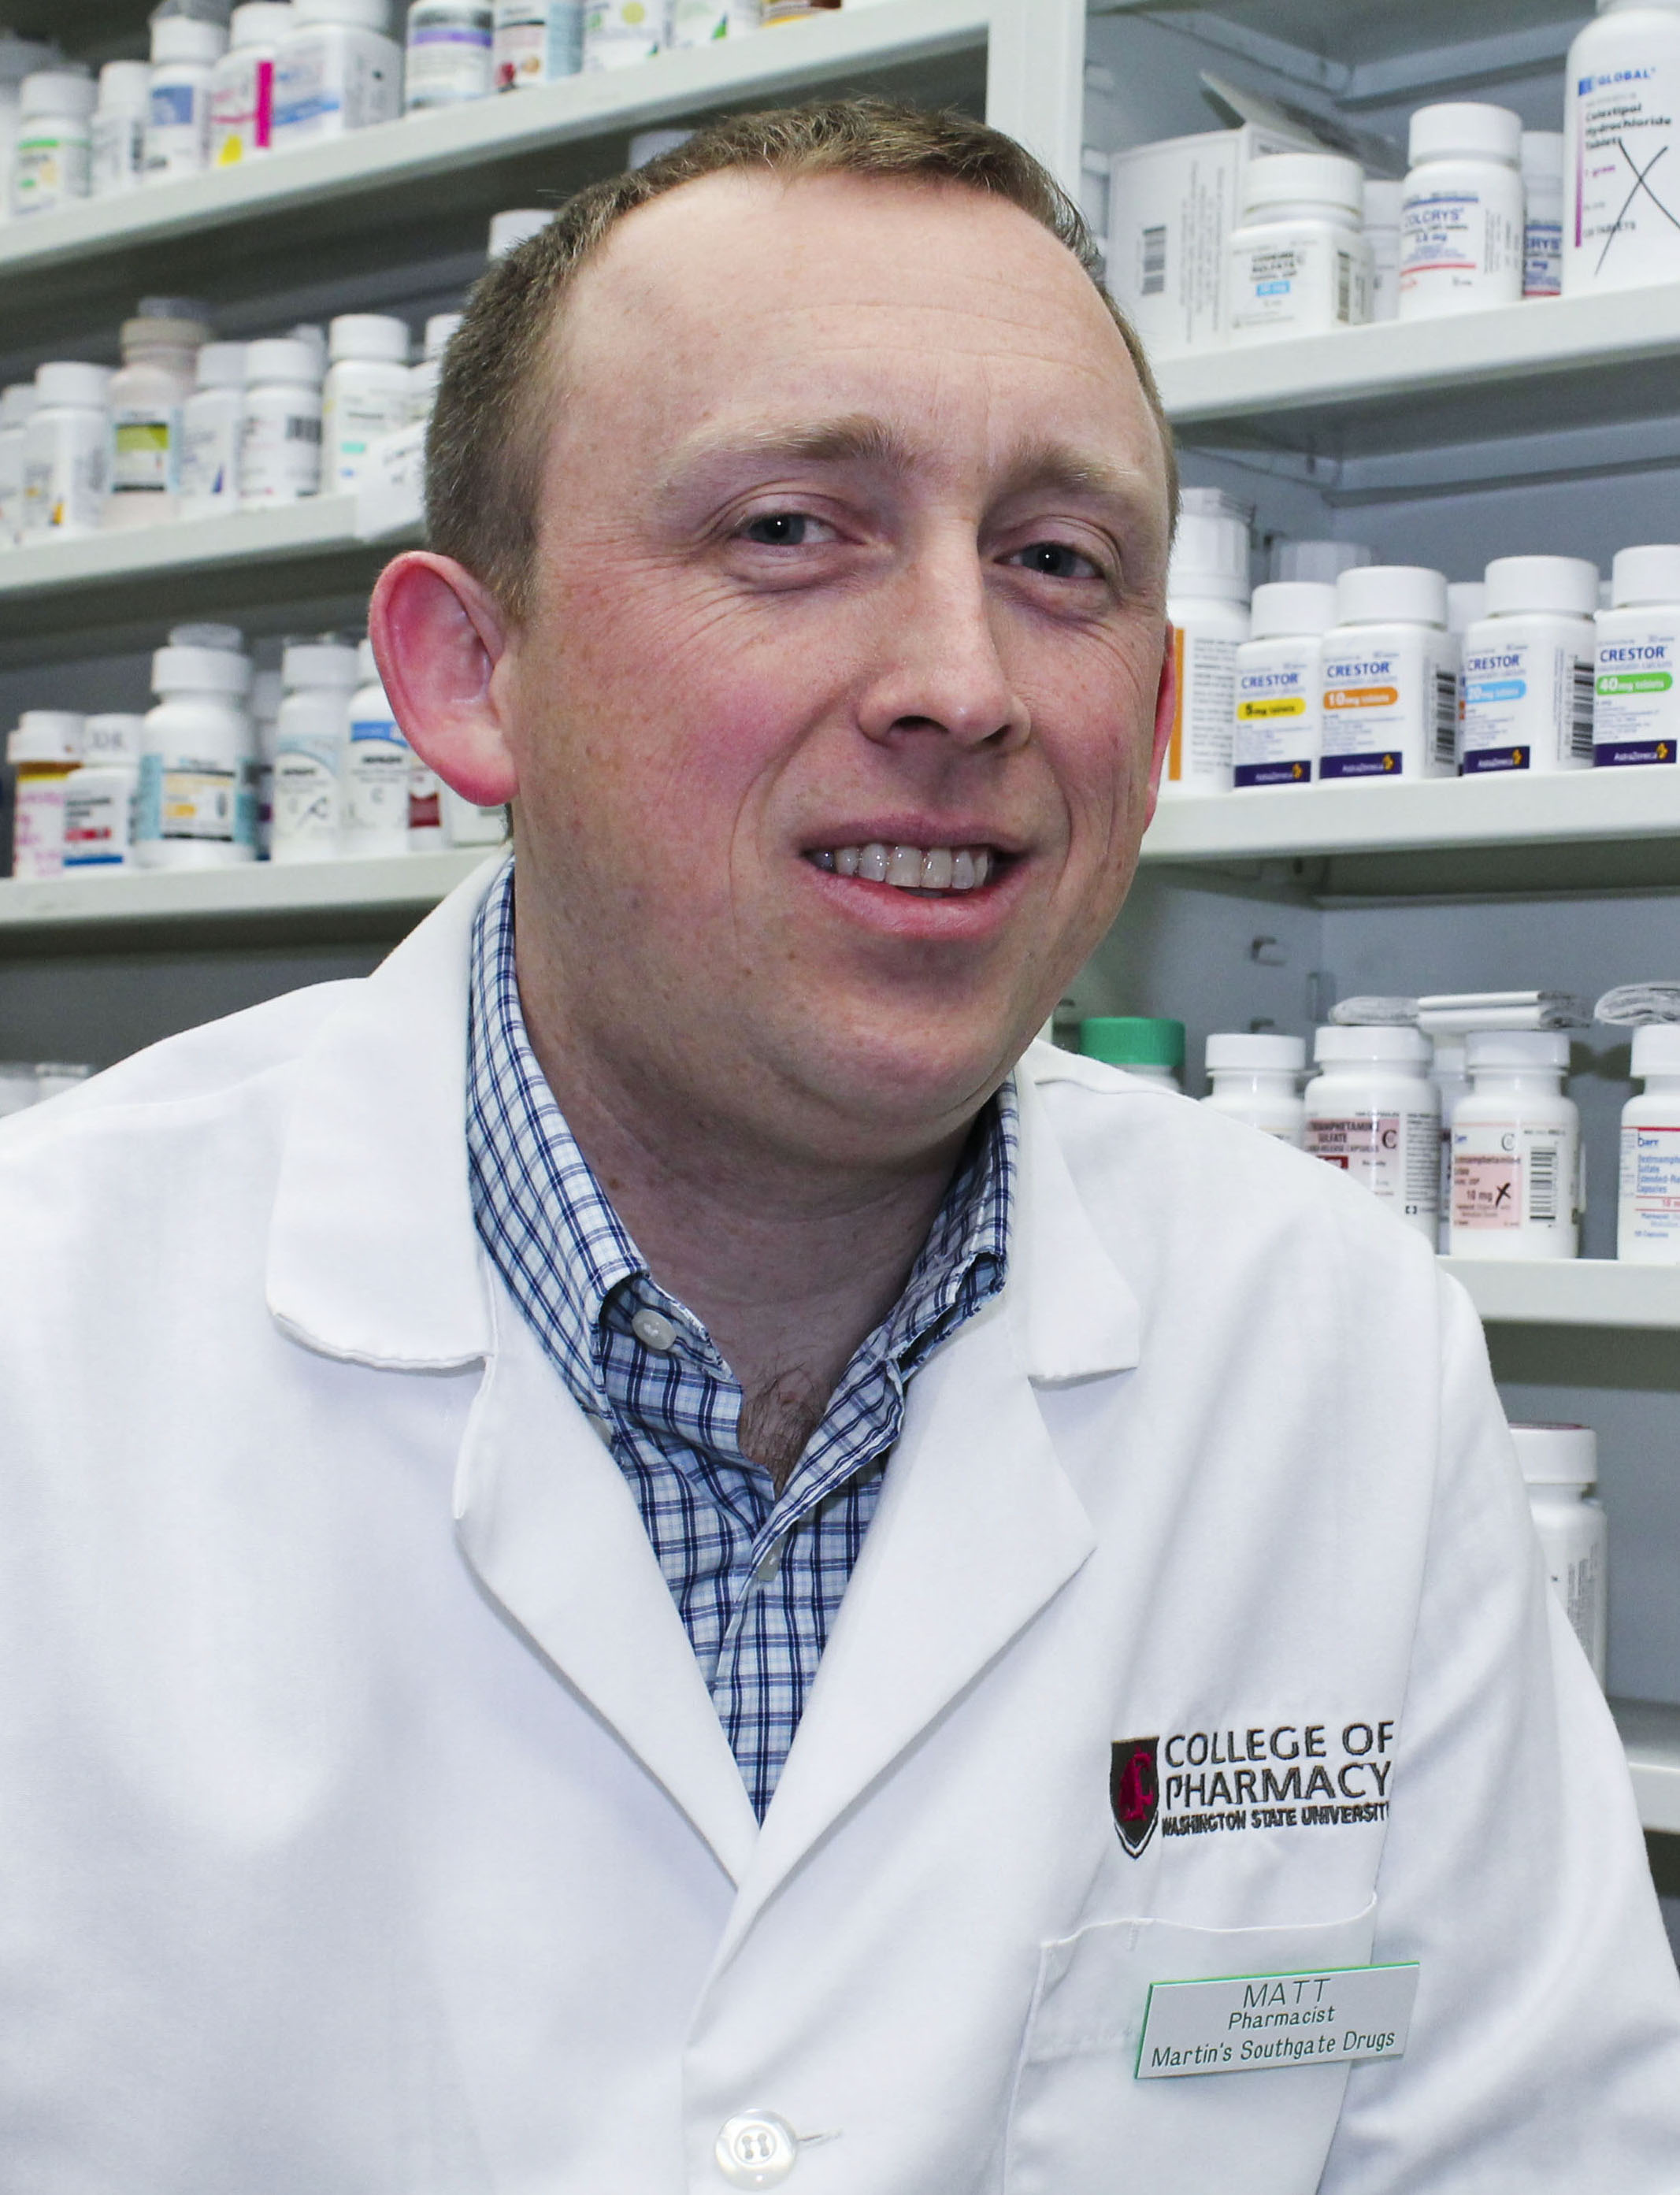 Matt Rhea, Pharmacist - Headshot-Matt